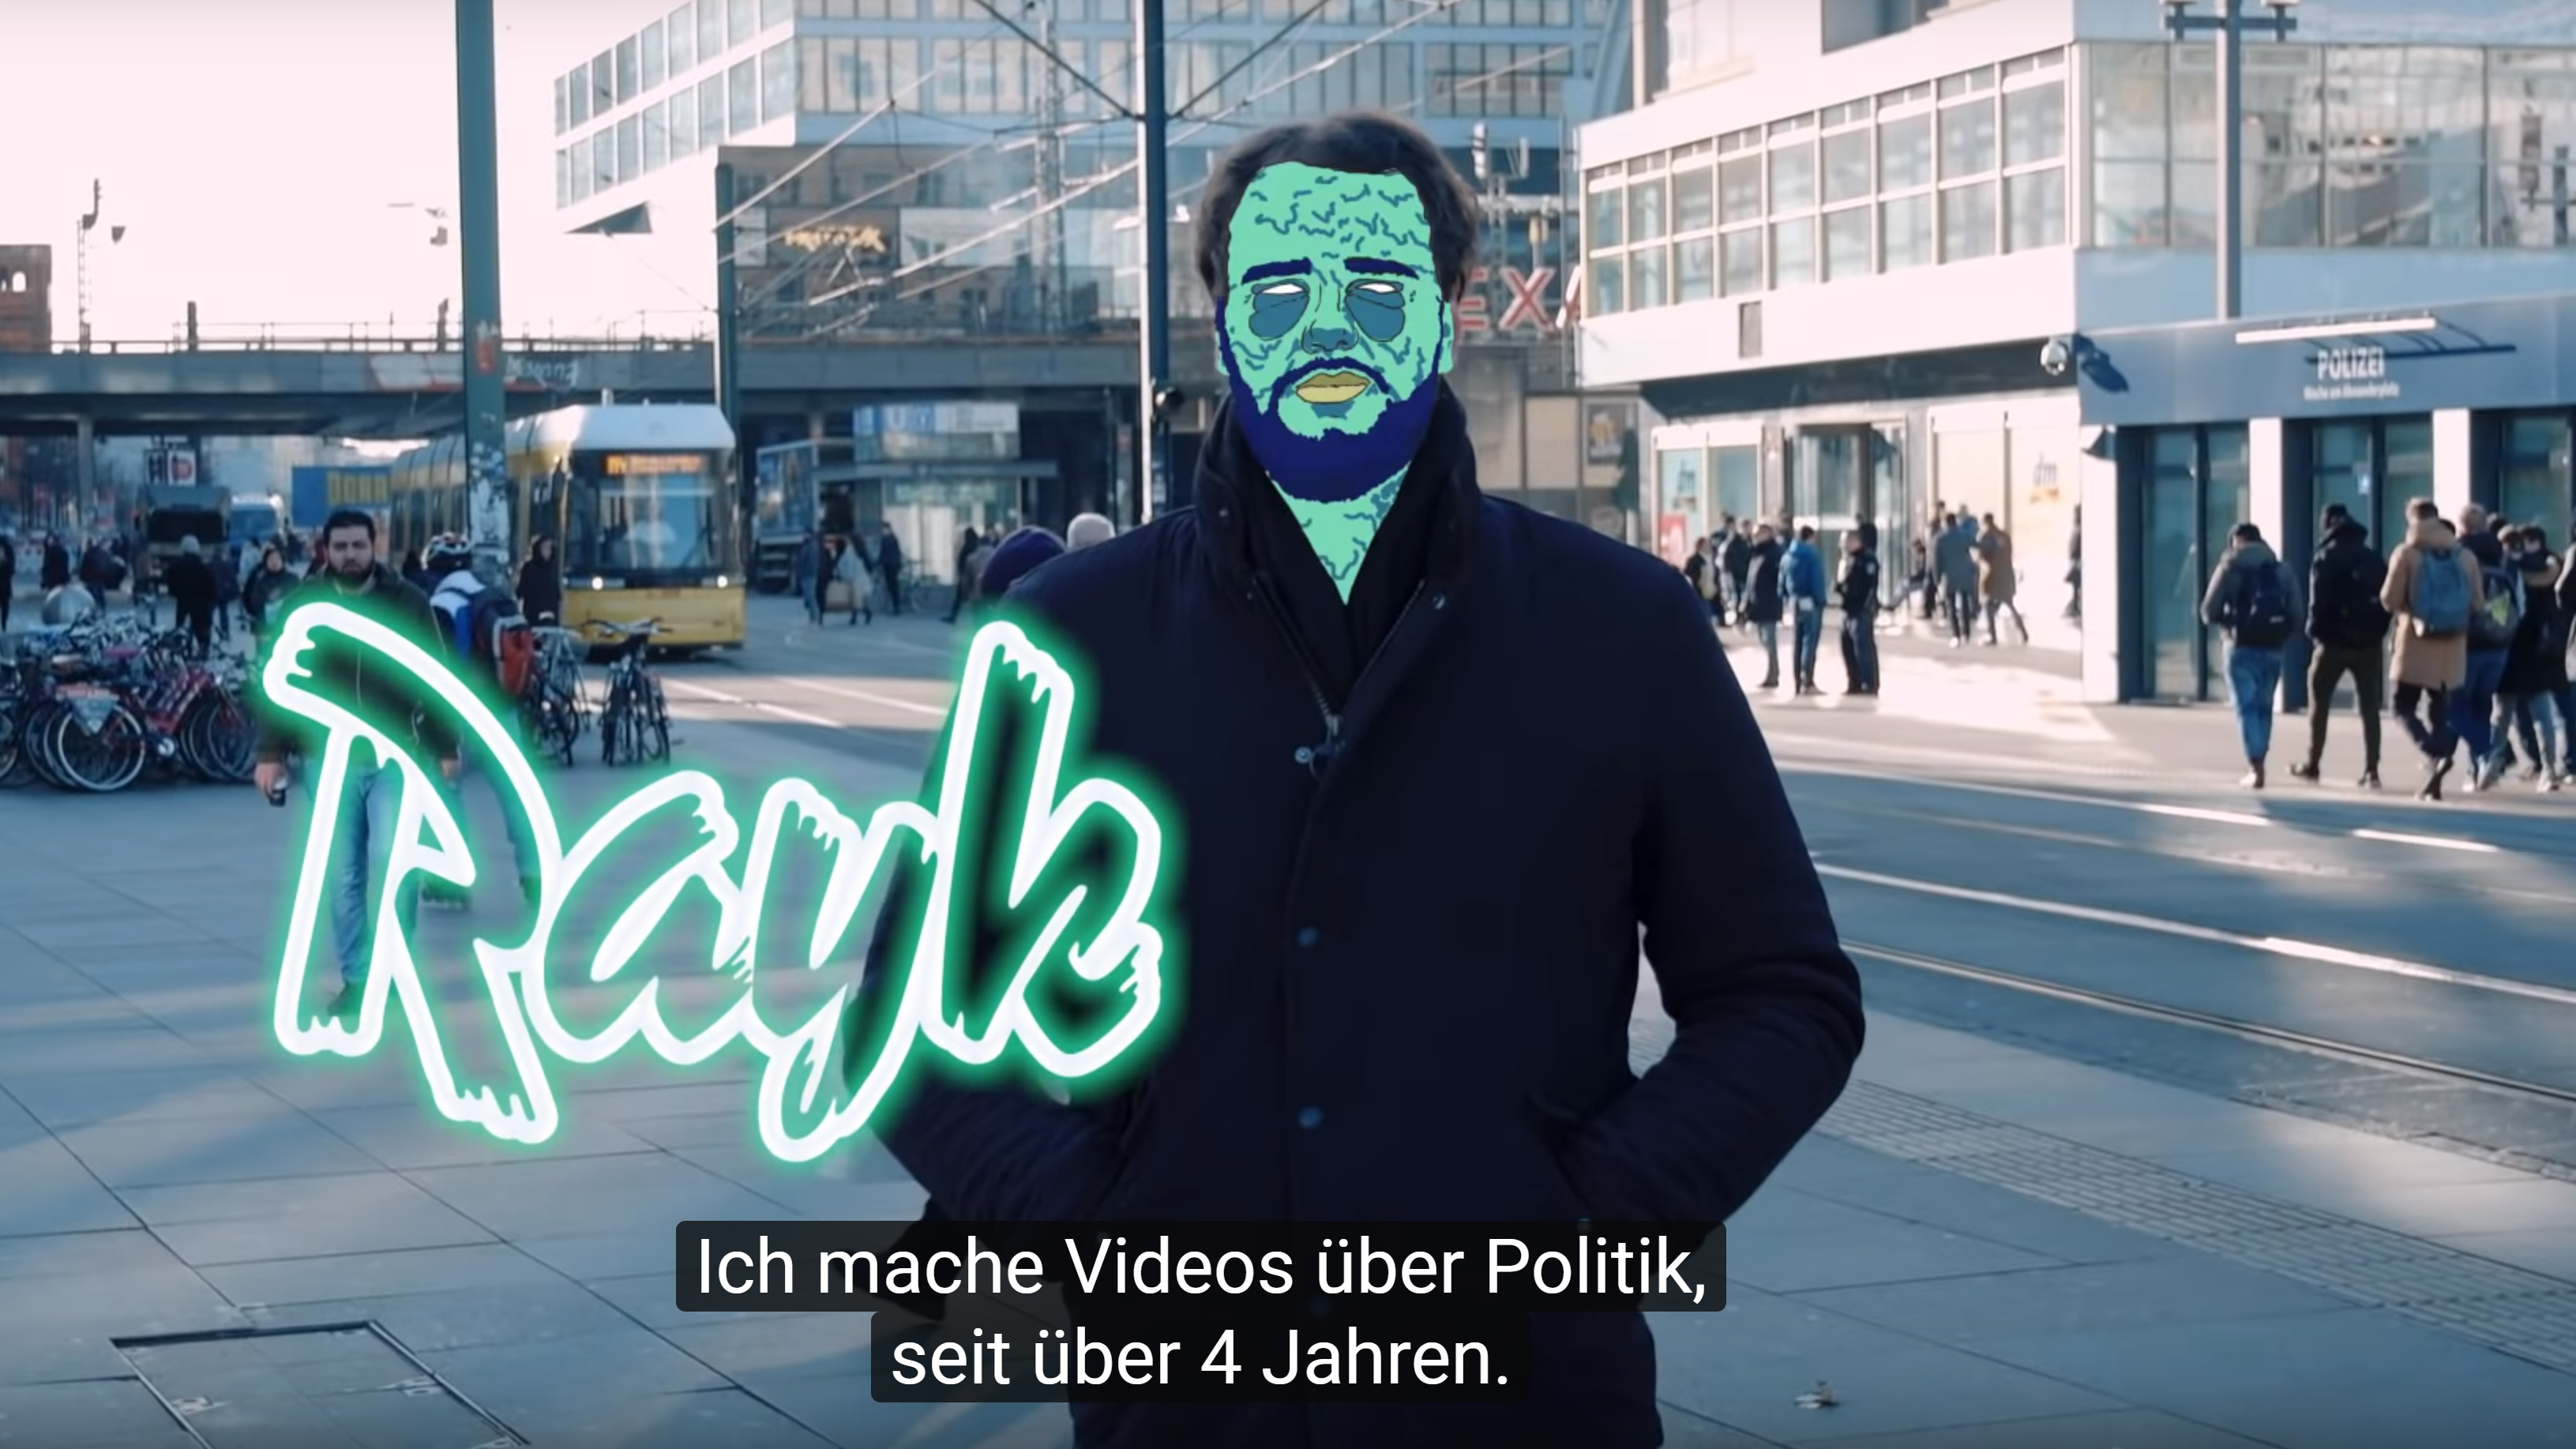 Lösch Dich – So organisiert ist der Hate im Netz